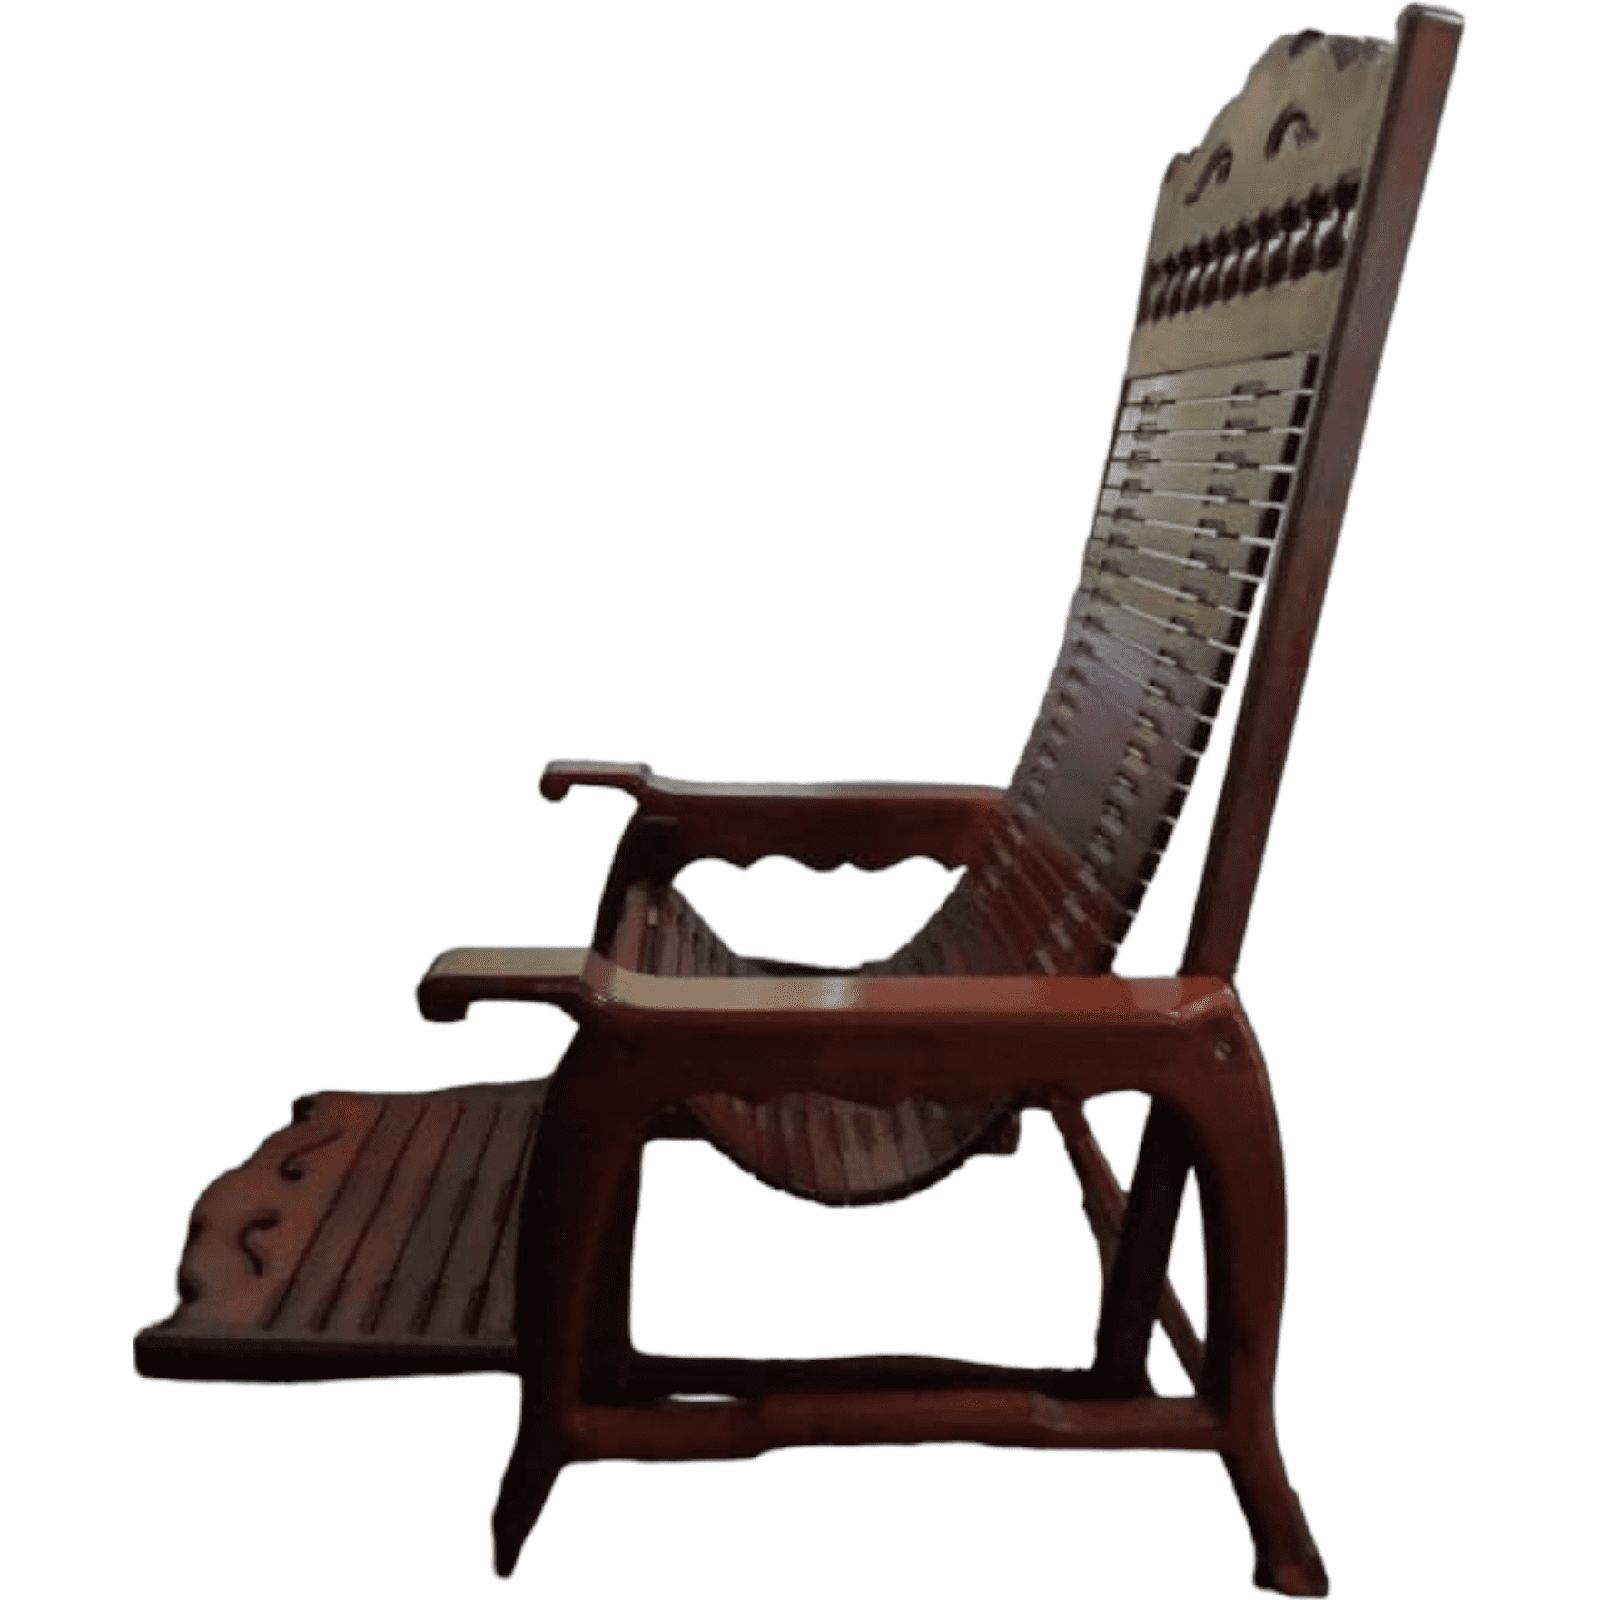 Hardwood recliner